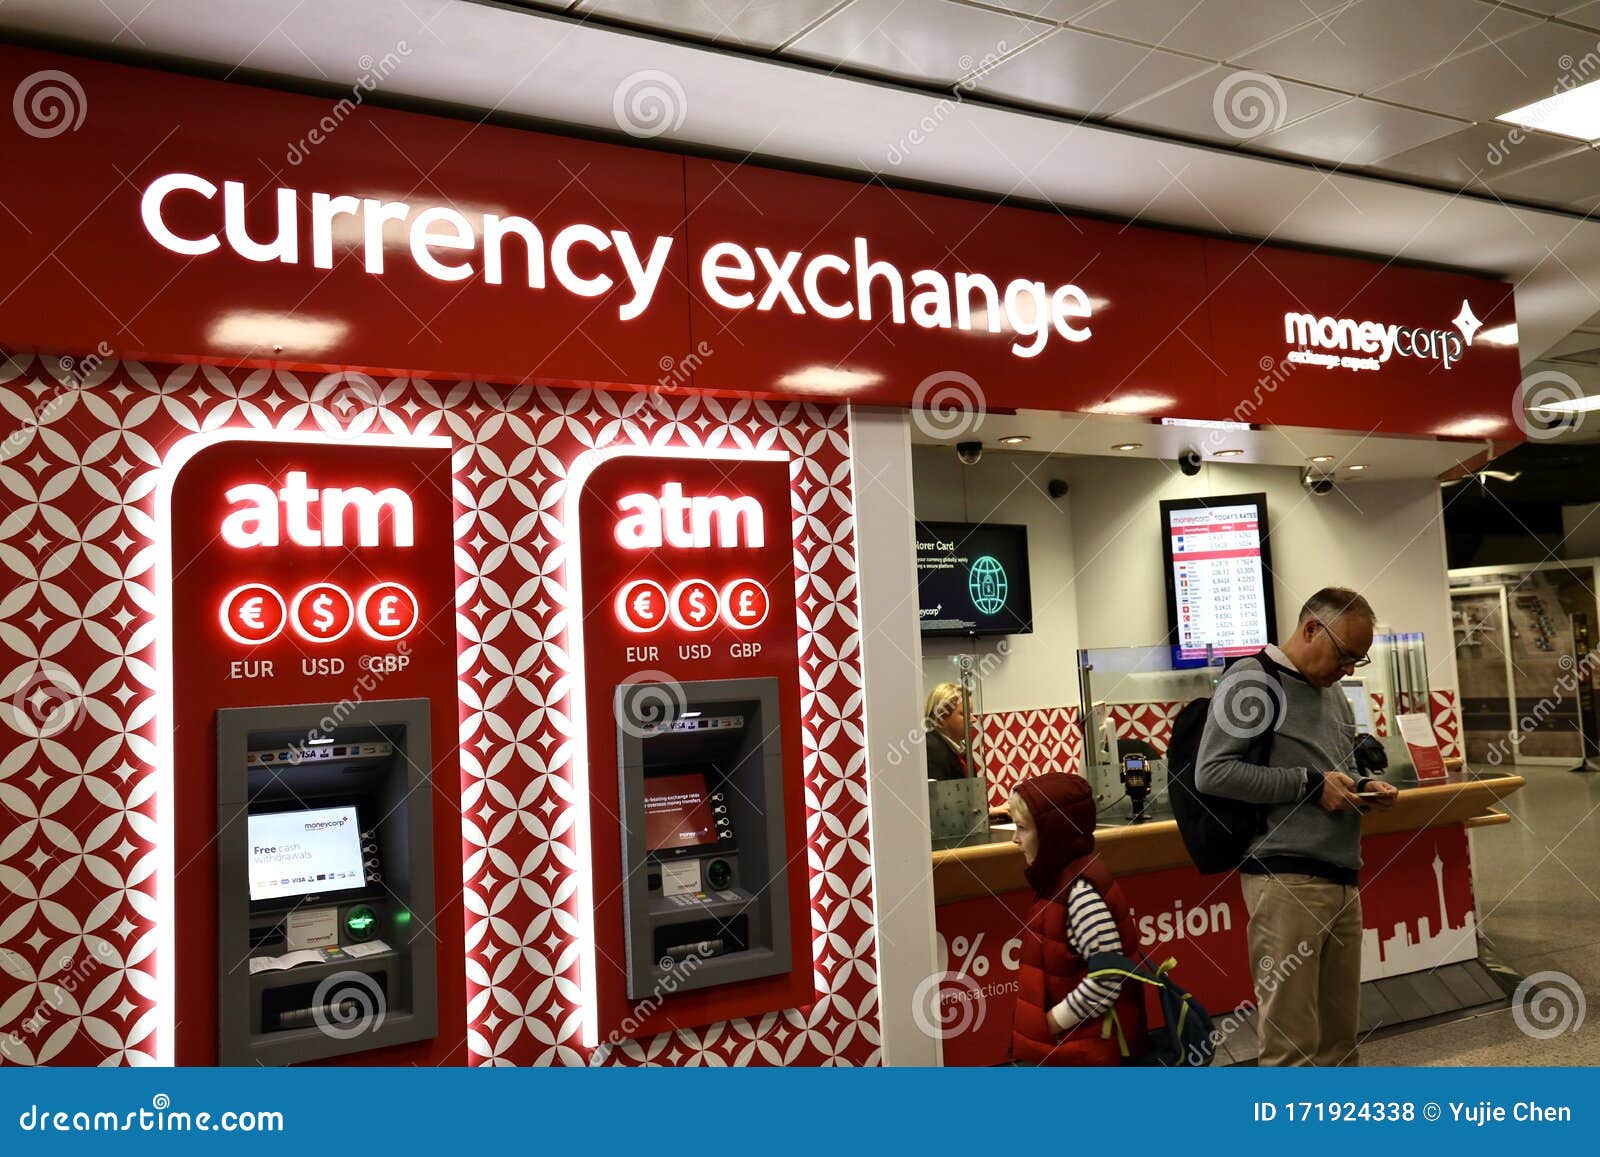 Delhi airport currency exchange